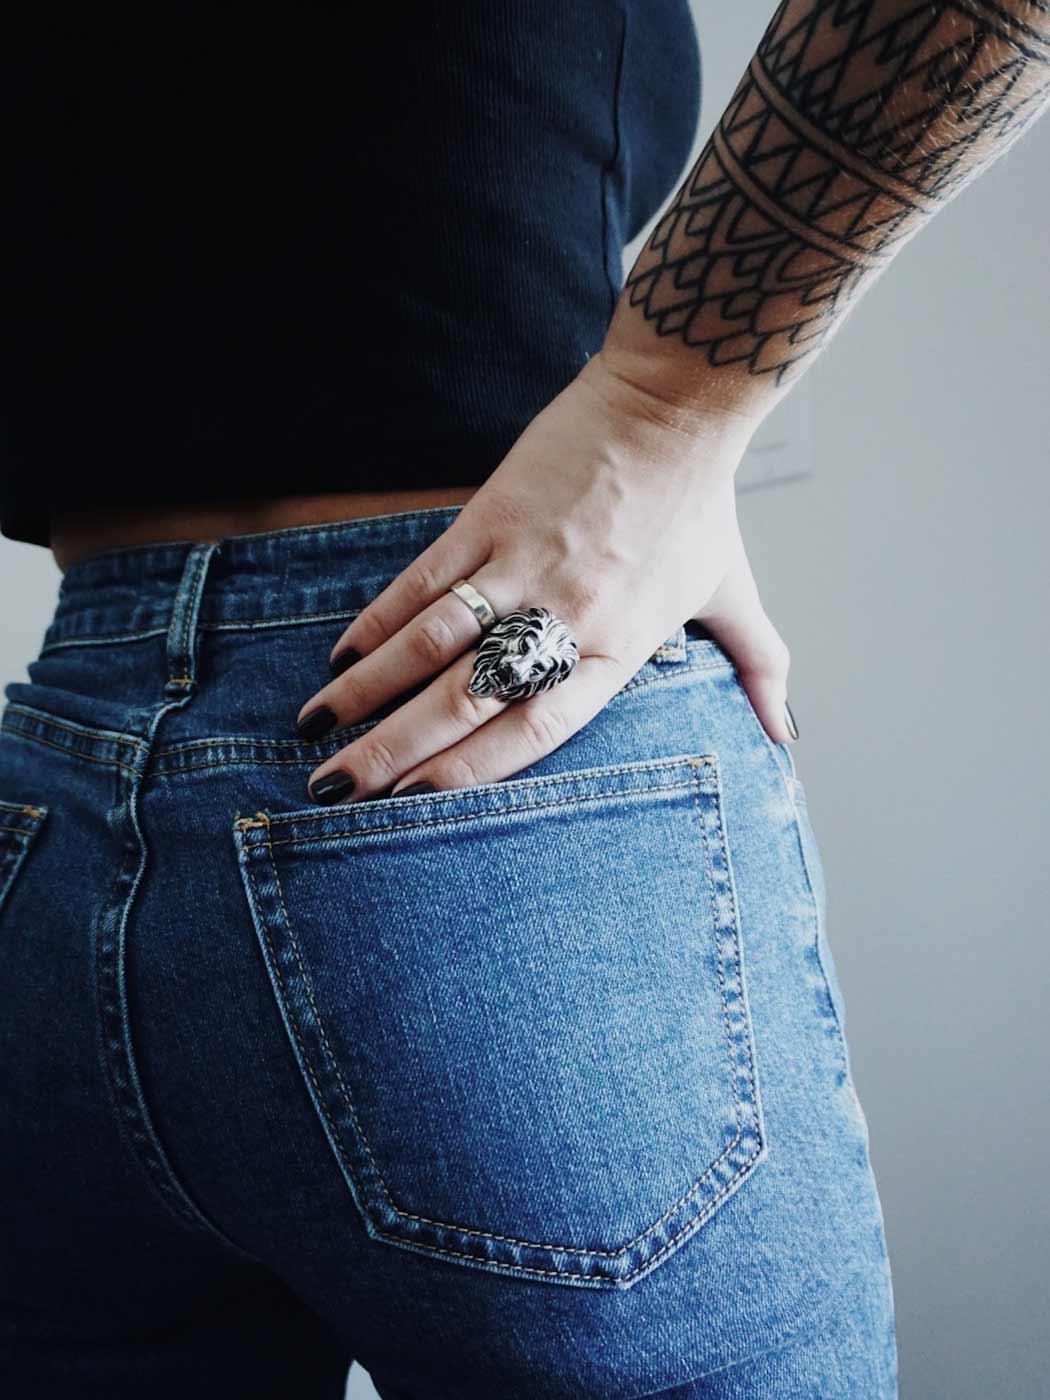 Frauenpo von hinten in einer eng geschnittenen Jeans